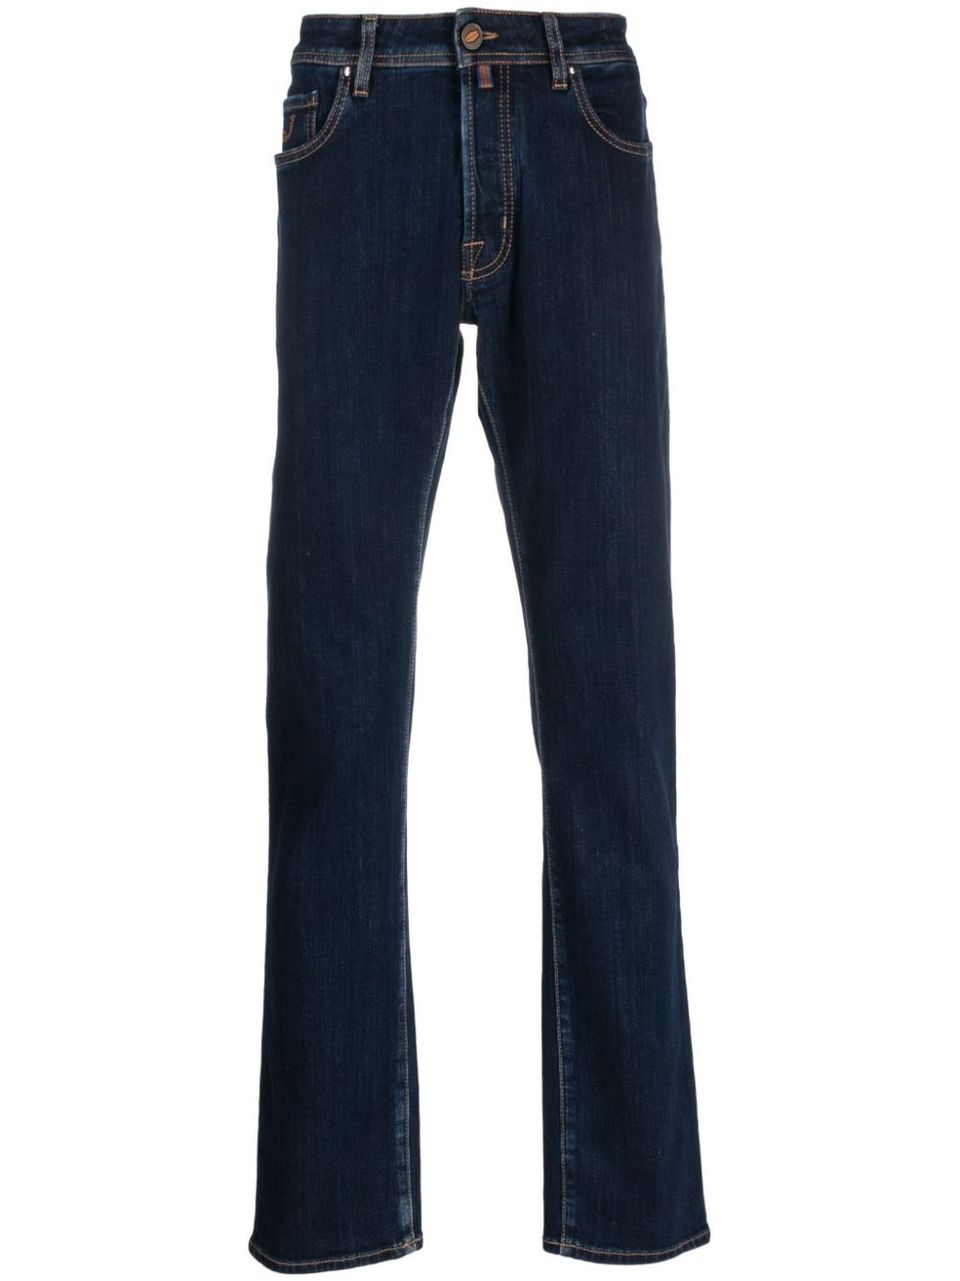 Prada Jeans for Women - FARFETCH